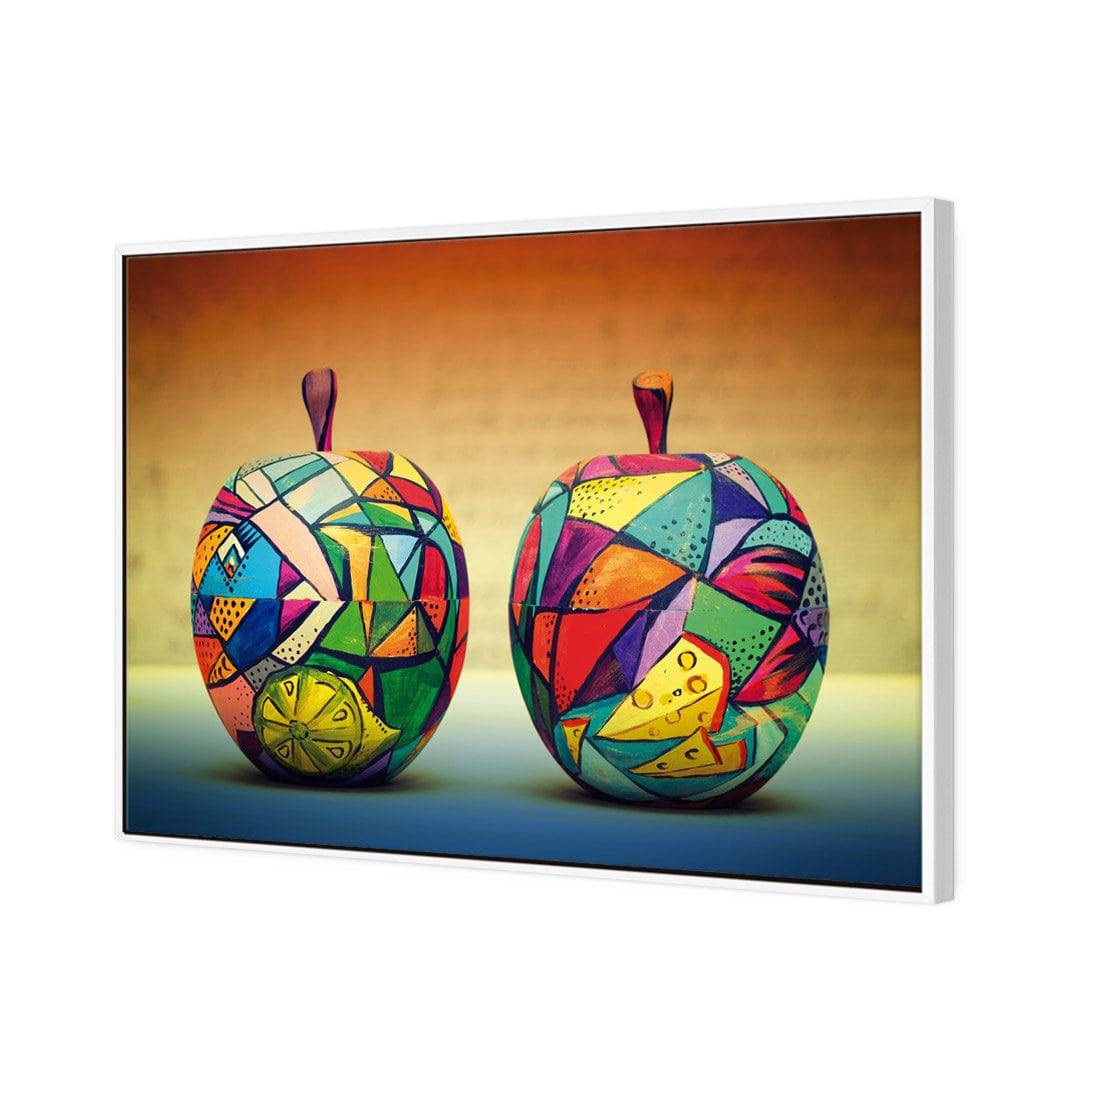 Forbidden Fruit Canvas Art-Canvas-Wall Art Designs-45x30cm-Canvas - White Frame-Wall Art Designs